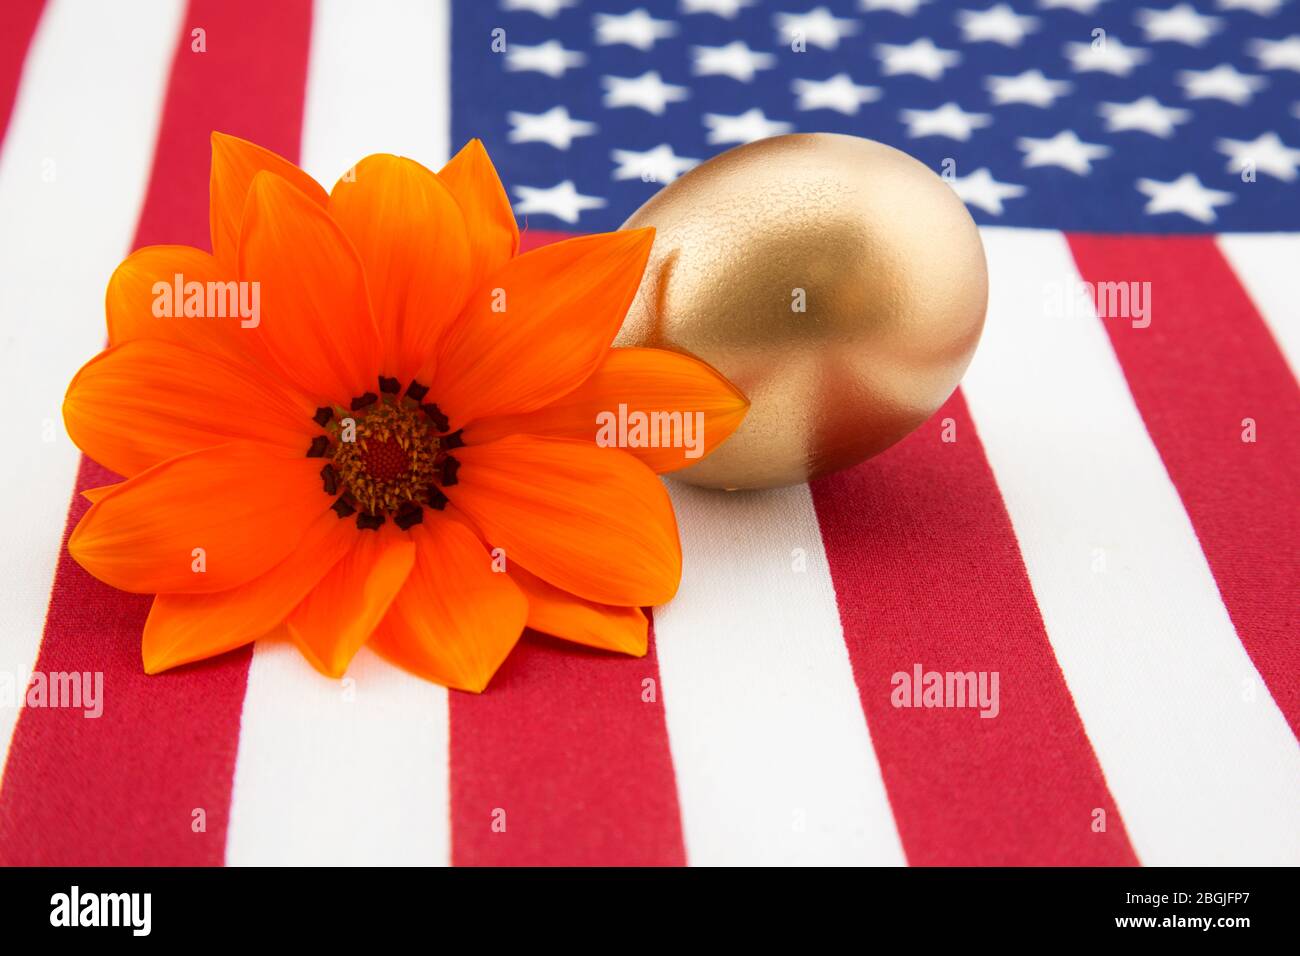 La brillante Marguerite orange avec oeuf d'or sur le dessin du drapeau rouge, blanc et bleu reflète les espoirs et les rêves économiques américains Banque D'Images